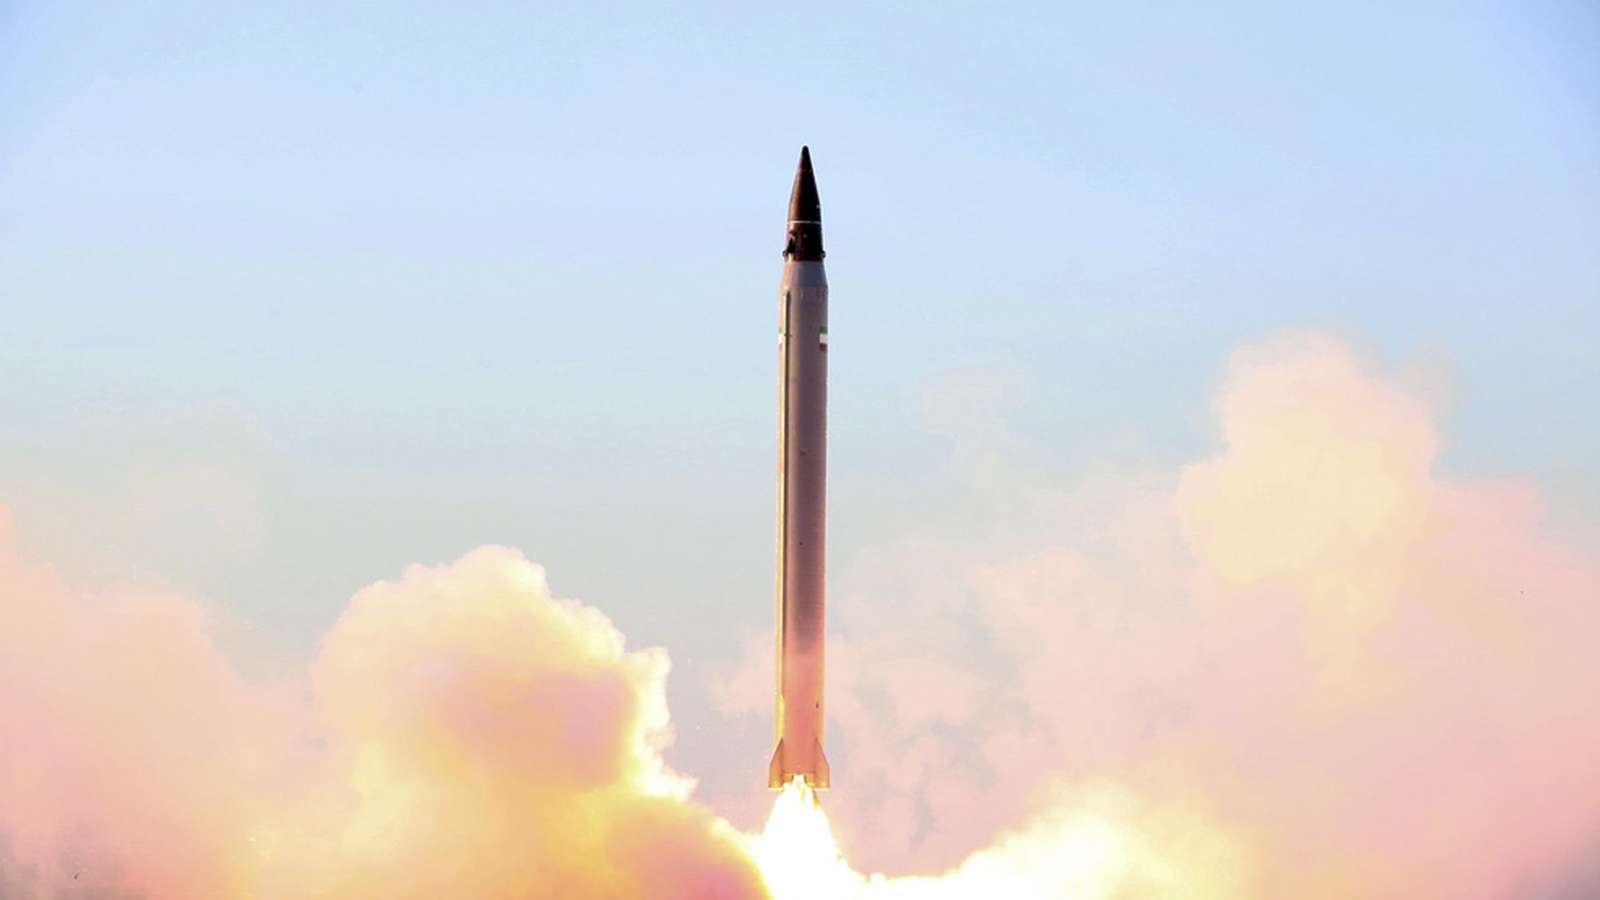 إيران تقول إنها تمتلك صواريخ دقيقة التوجيه وصواريخ كروز وطائرات مسيرة مسلحة قادرة على ضرب القواعد العسكرية الأميركية في الخليج (أسوشيتد برس)